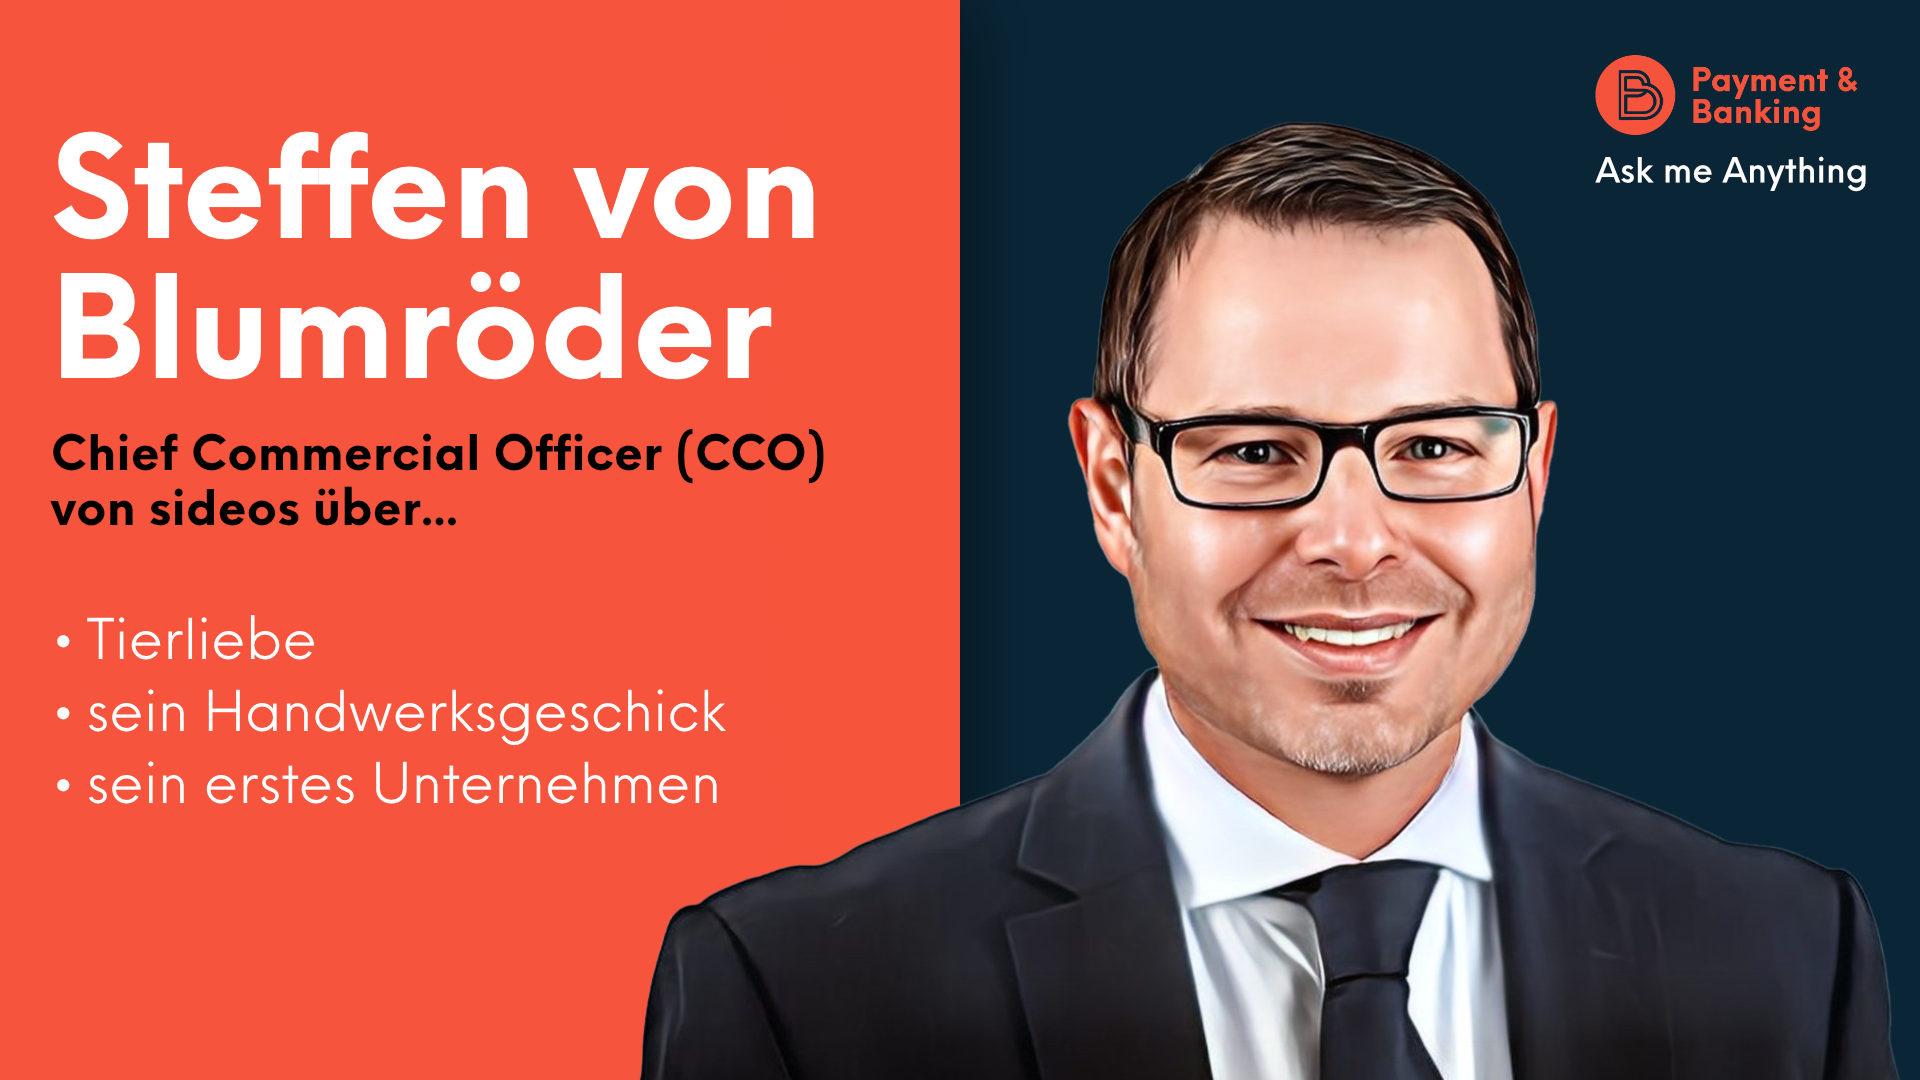 Steffen von Blumröder, Chief Commercial Officer (CCO) von sideos, über sein Handwerkstalent, Tierliebe und sein erstes Unternehmen.